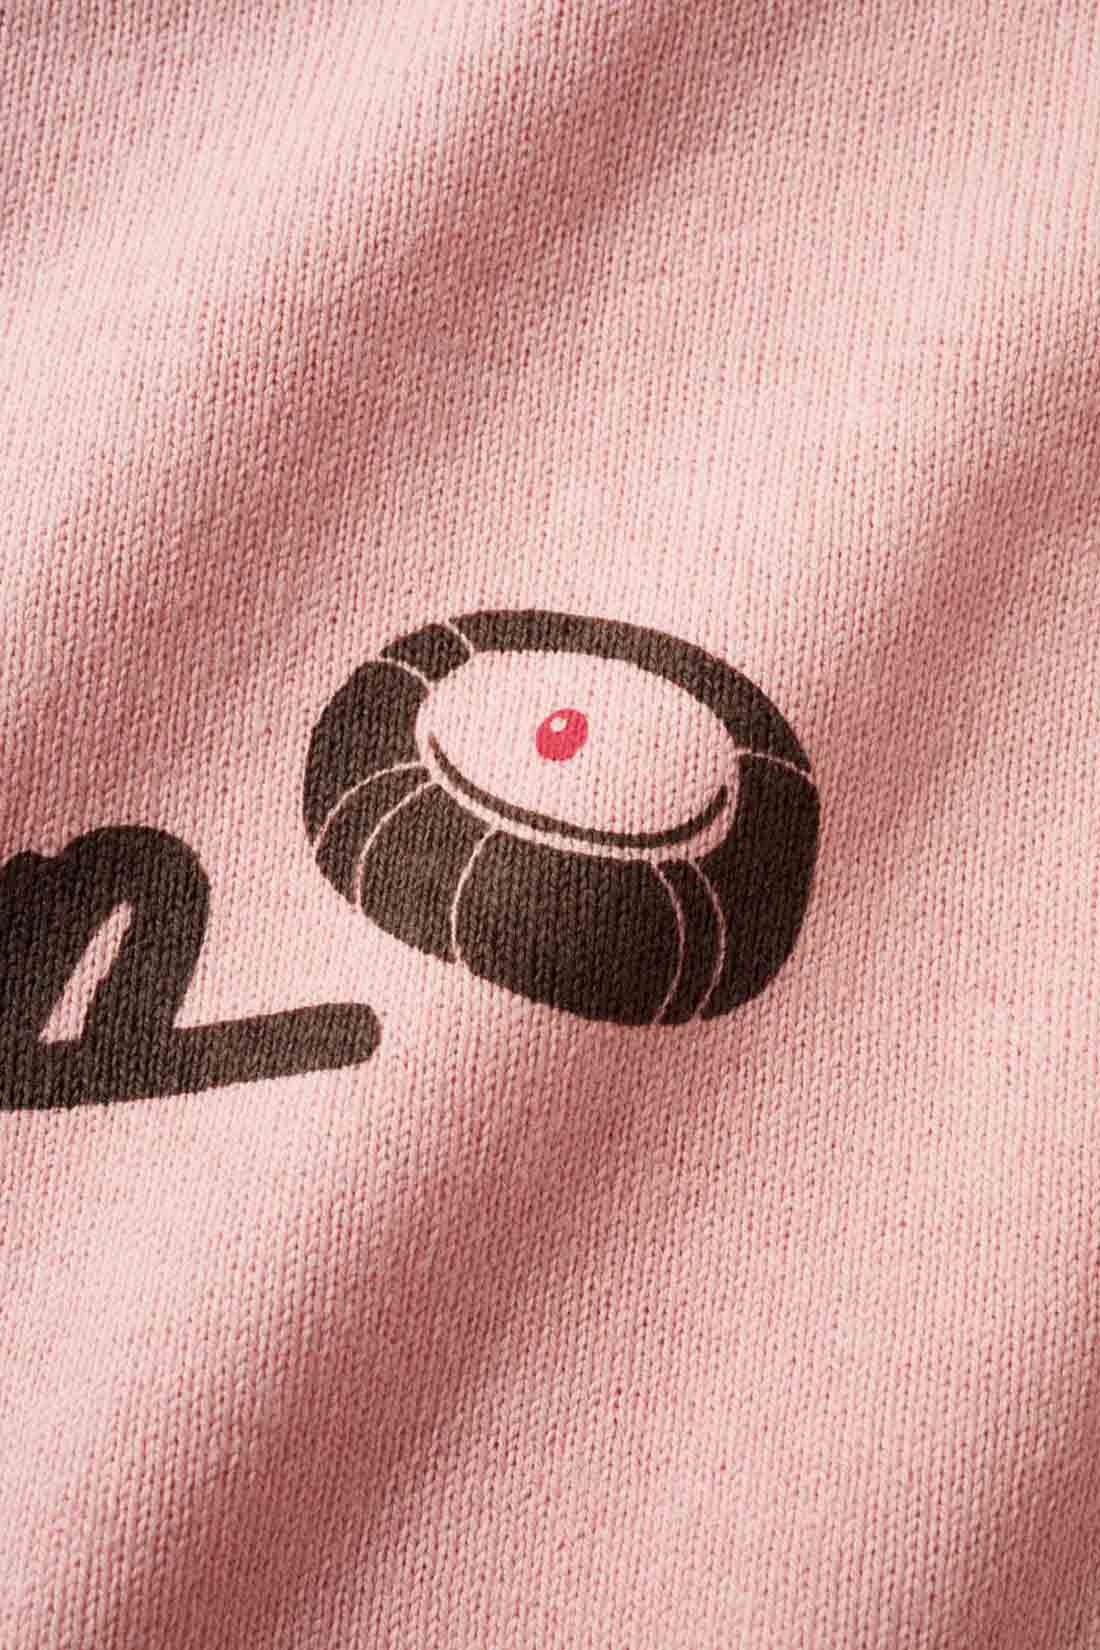 Live in  comfort|Live love cottonプロジェクト リブ イン コンフォート神戸のベーカリーハラダのパンさんとつくったオーガニックコットンのレトロかわいいTシャツ〈ベビーピンク〉|バックプリントには定番商品 「シャーベットクリーム」 のイラストも。※お届けするカラーとは異なります。